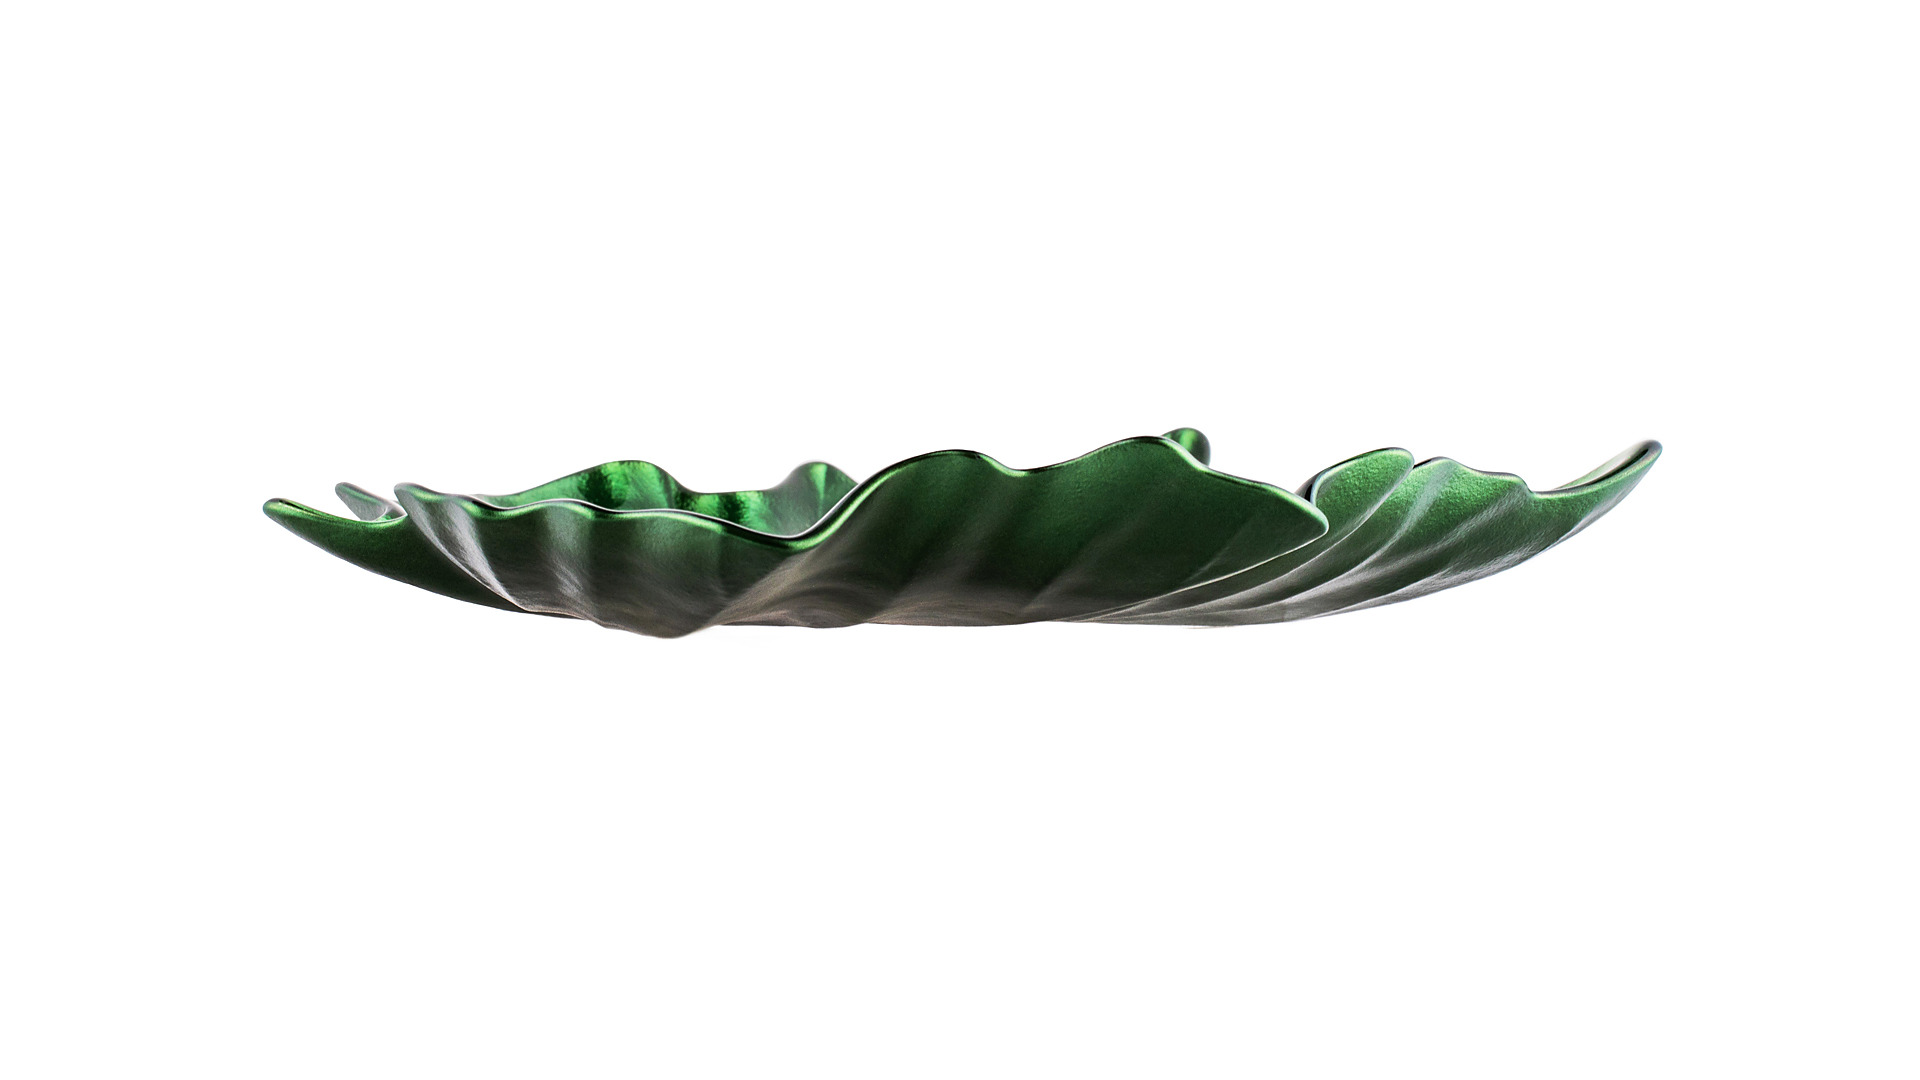 Блюдо для закусок Akcam Кленовый лист 17 см, стекло, зеленый